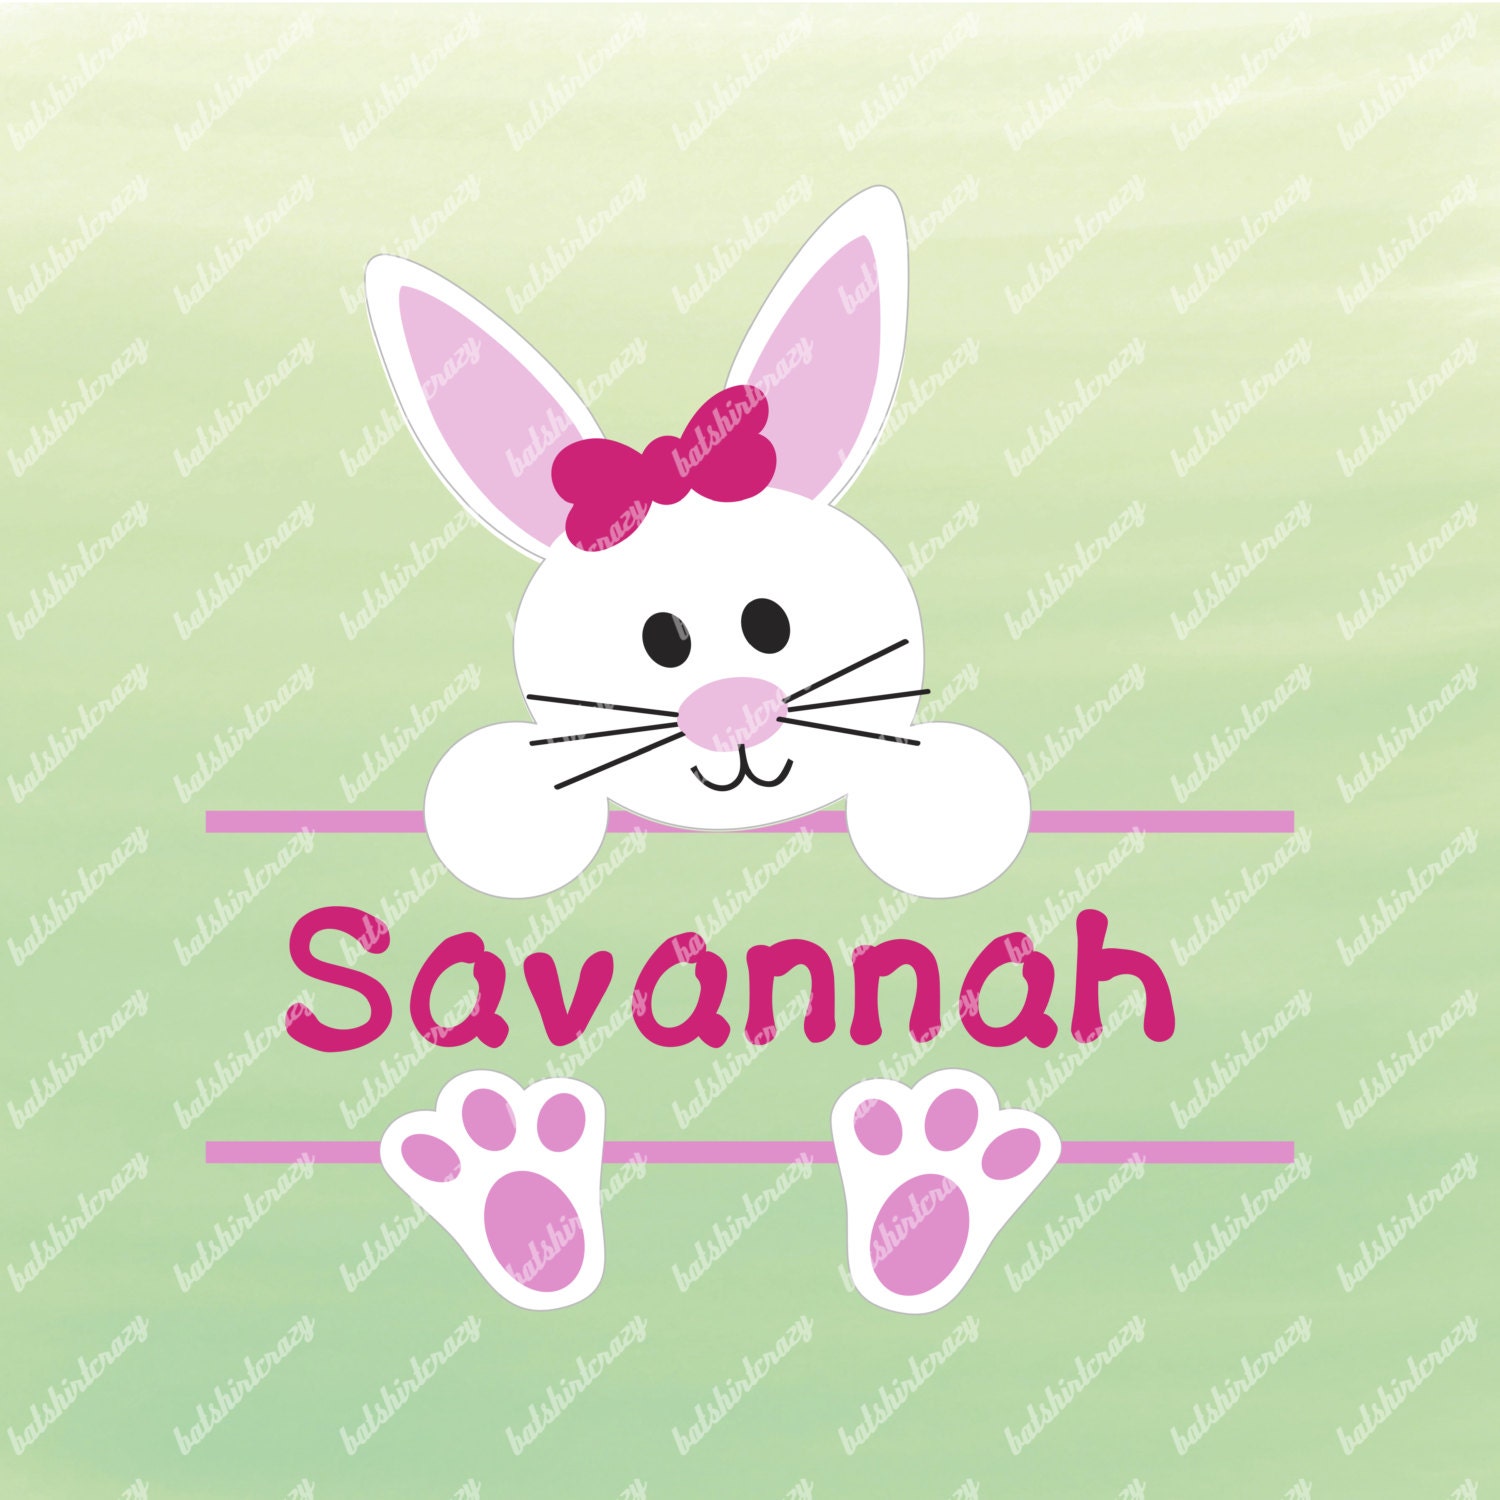 Download Free SVG Bunny SVG for Easter Split Bunny Design Cute Easter Shi.....